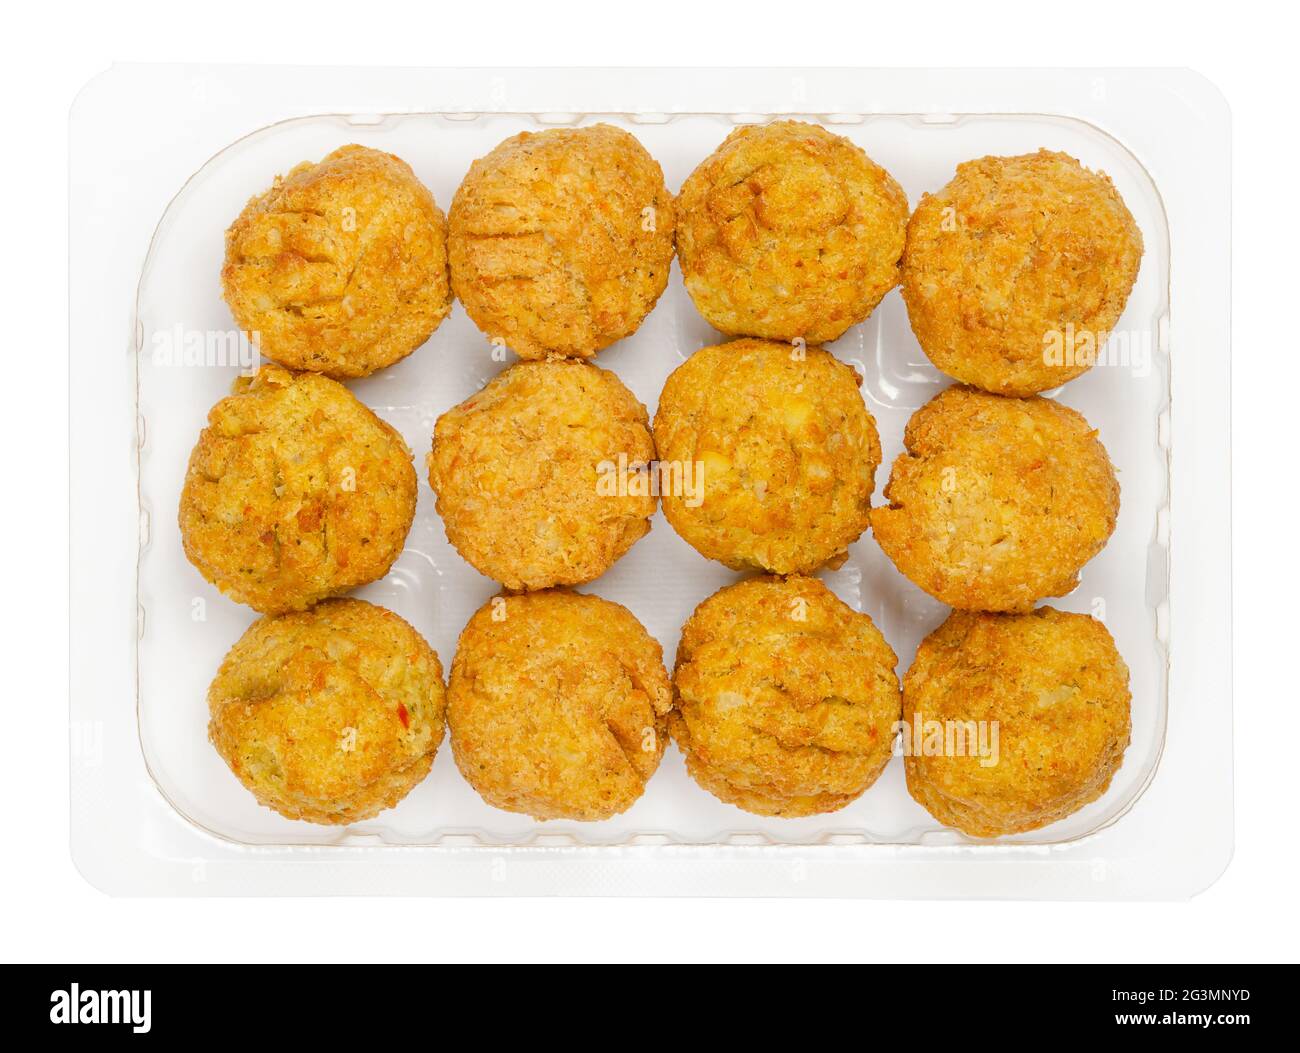 Vorgebratene vegane Falafel-Kugeln, in einem klaren Kunststoffbehälter. Kugelförmige Krabben, basierend auf Kichererbsen und Reis, einem traditionellen nahöstlichen Essen. Stockfoto